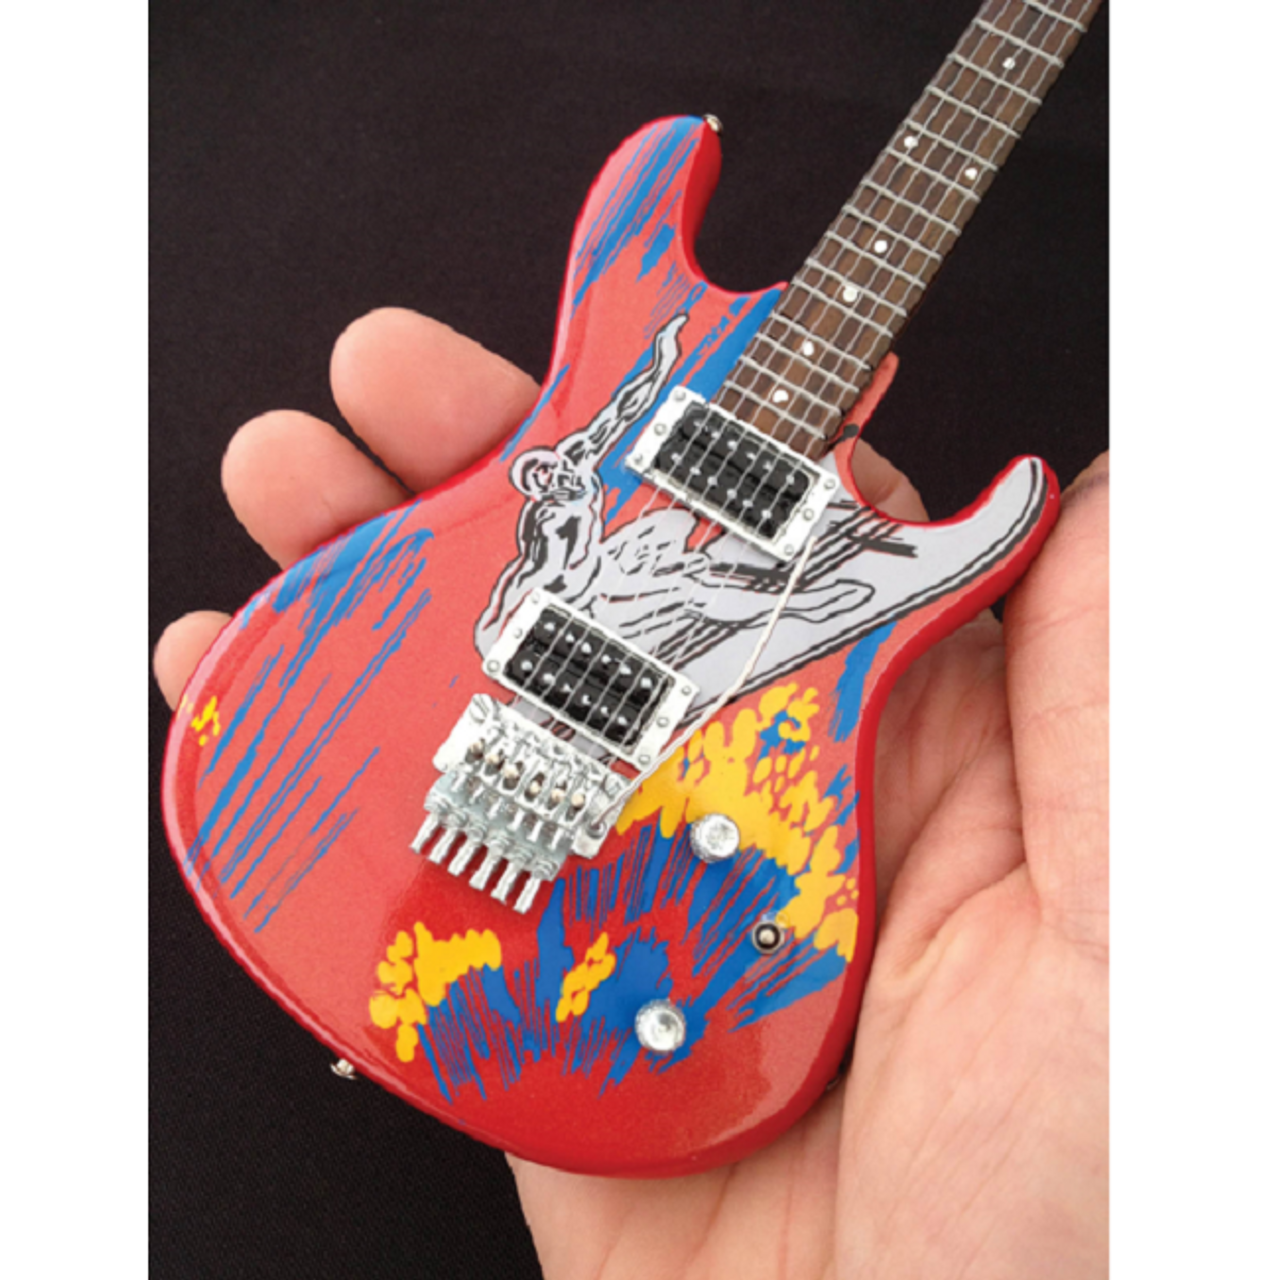 Joe Satriani Silver Surfer Model Miniature Guitar Replica Collectible